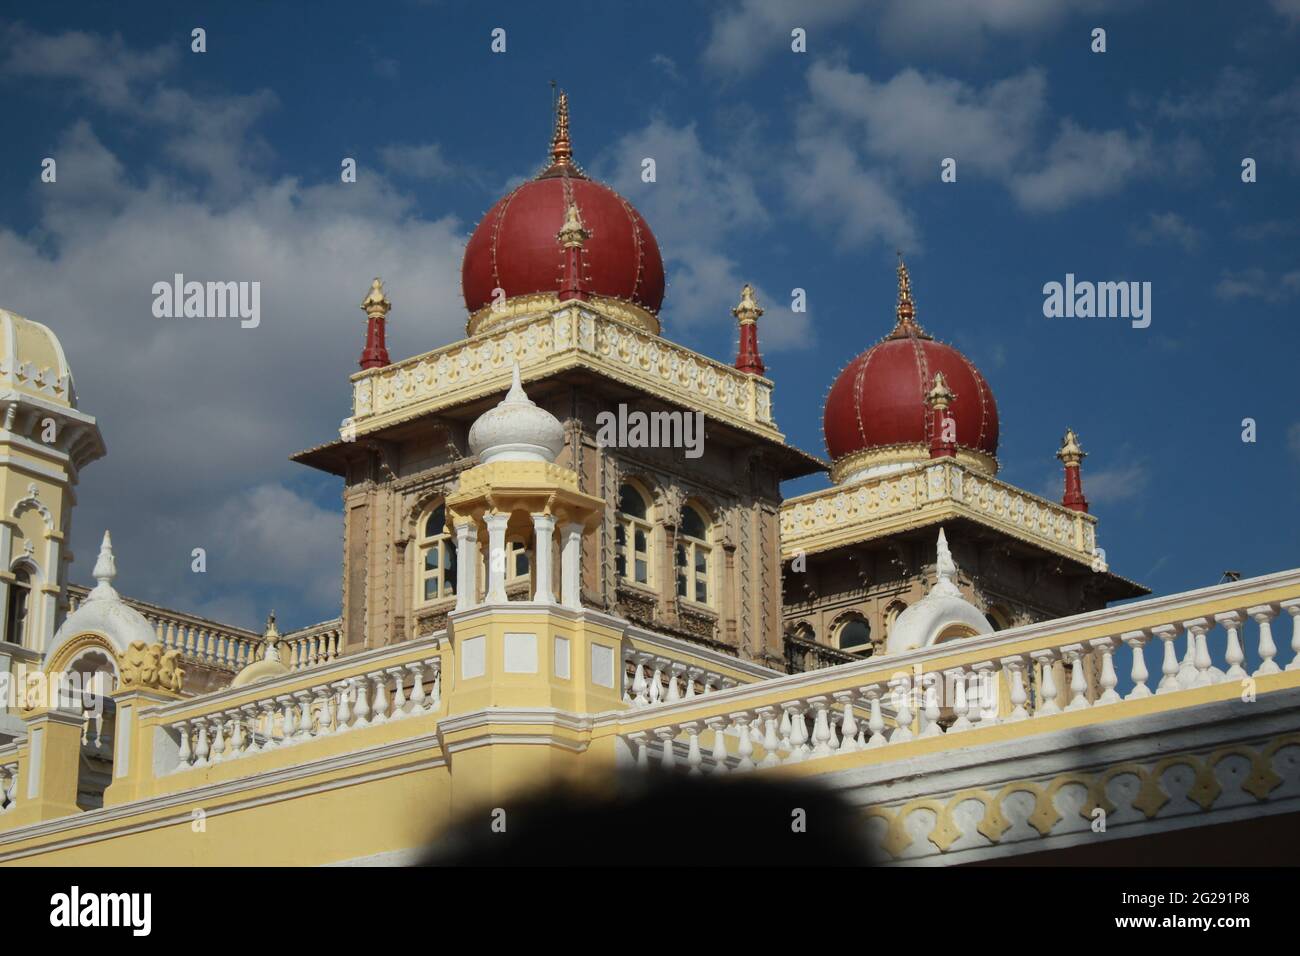 Dome auf Mysore Palace oder Amba Vilas Palace, Mysore, Indien. Indo-Saracenische Architektur. Residenz der Wadiyar Dynastie, Sitz des Königreichs Mysore. Stockfoto